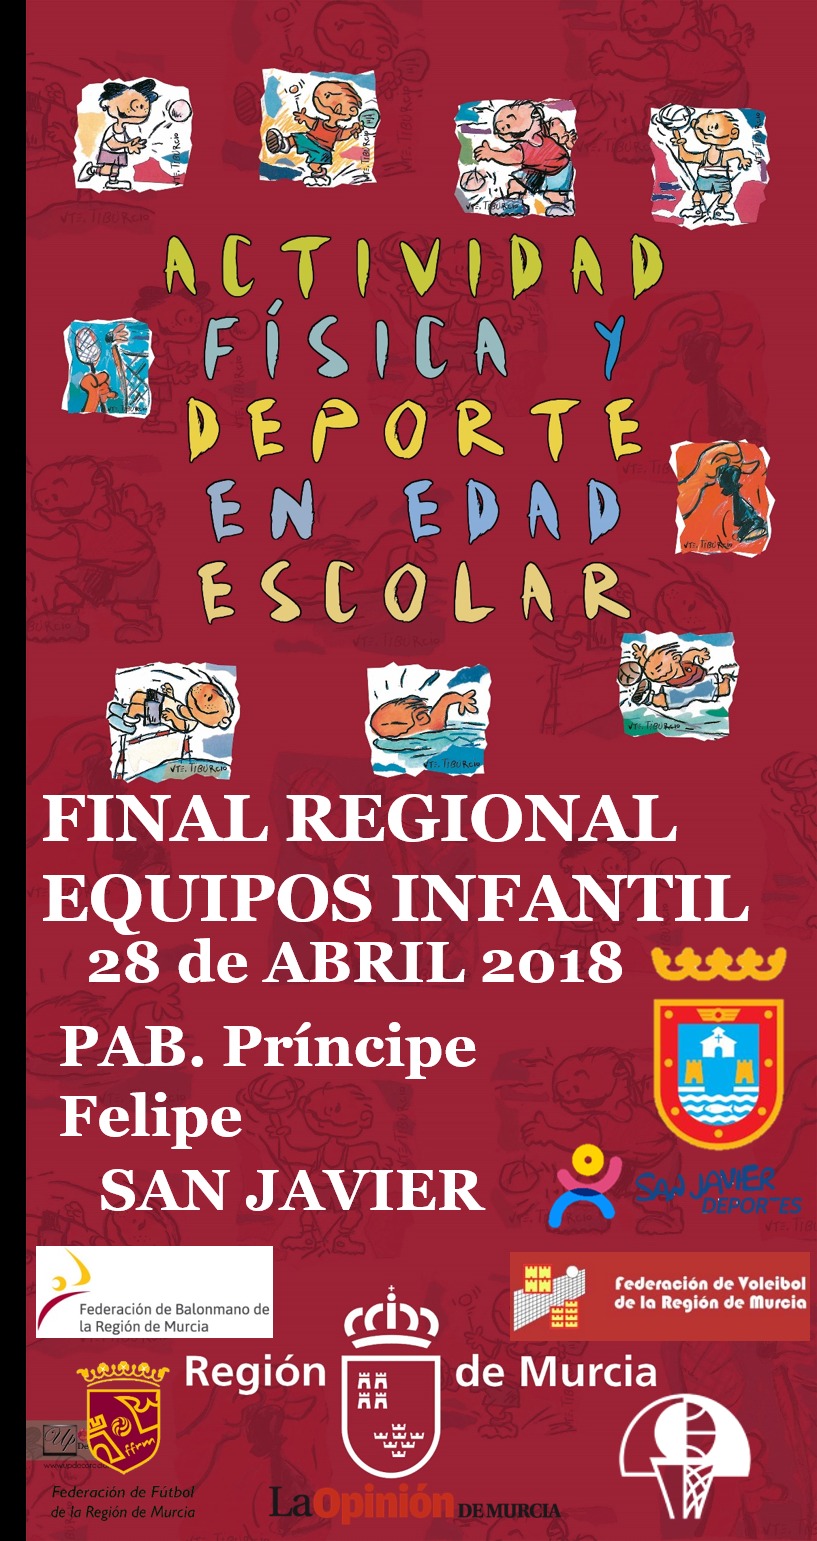 Dep Escolar. Final Regional Infantil de Deportes de Equipo 2018